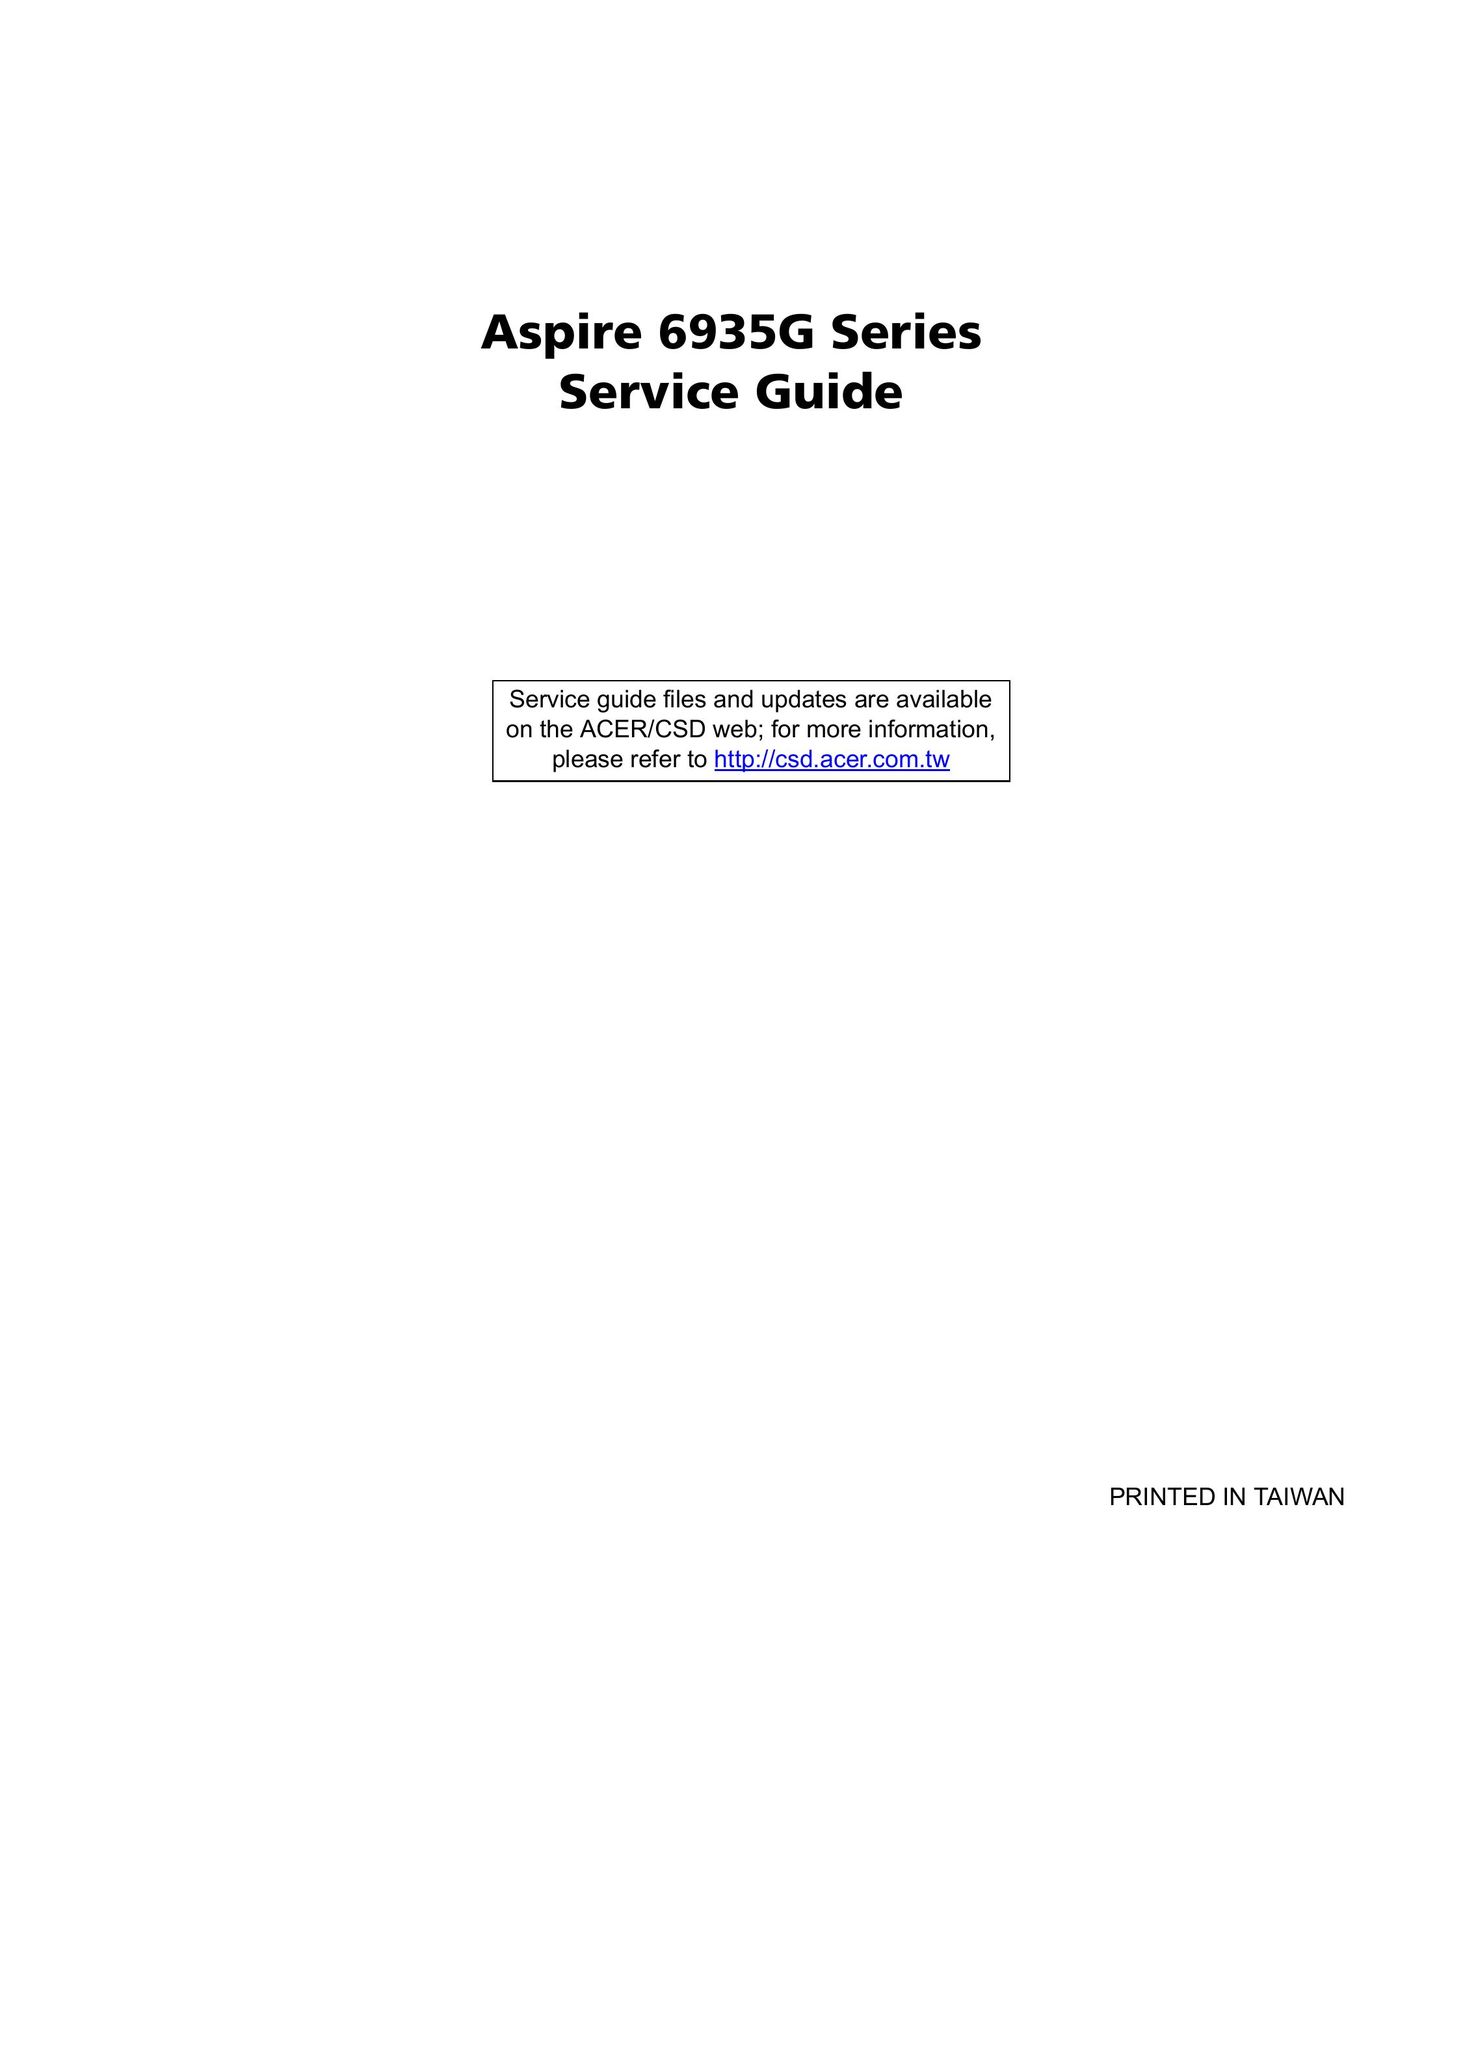 Aspire Digital 6935G Laptop User Manual